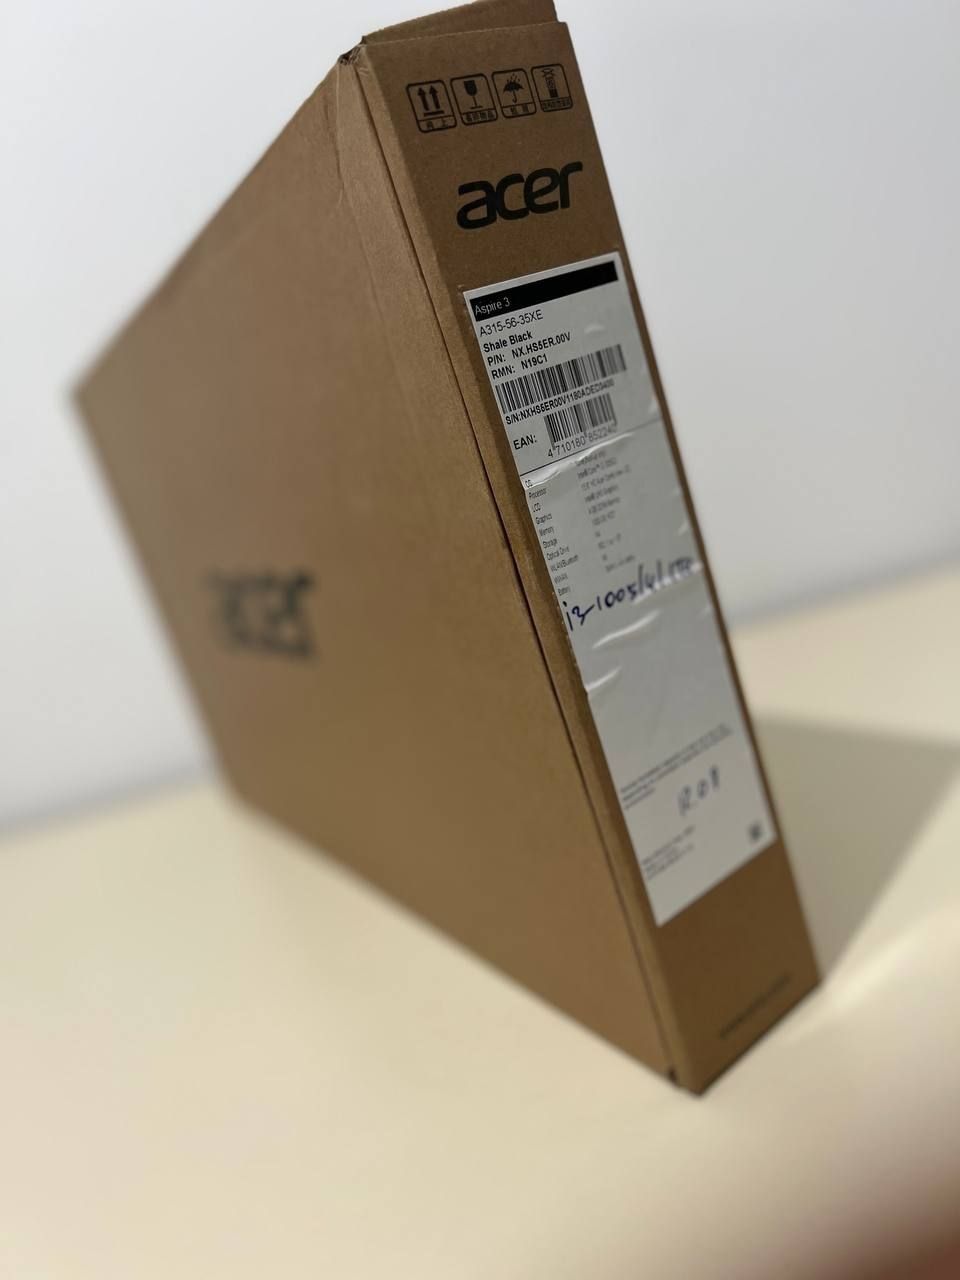 Acer Aspire 3 
цвет : Черный (Black)
Экран: 15,6 HD
Виде